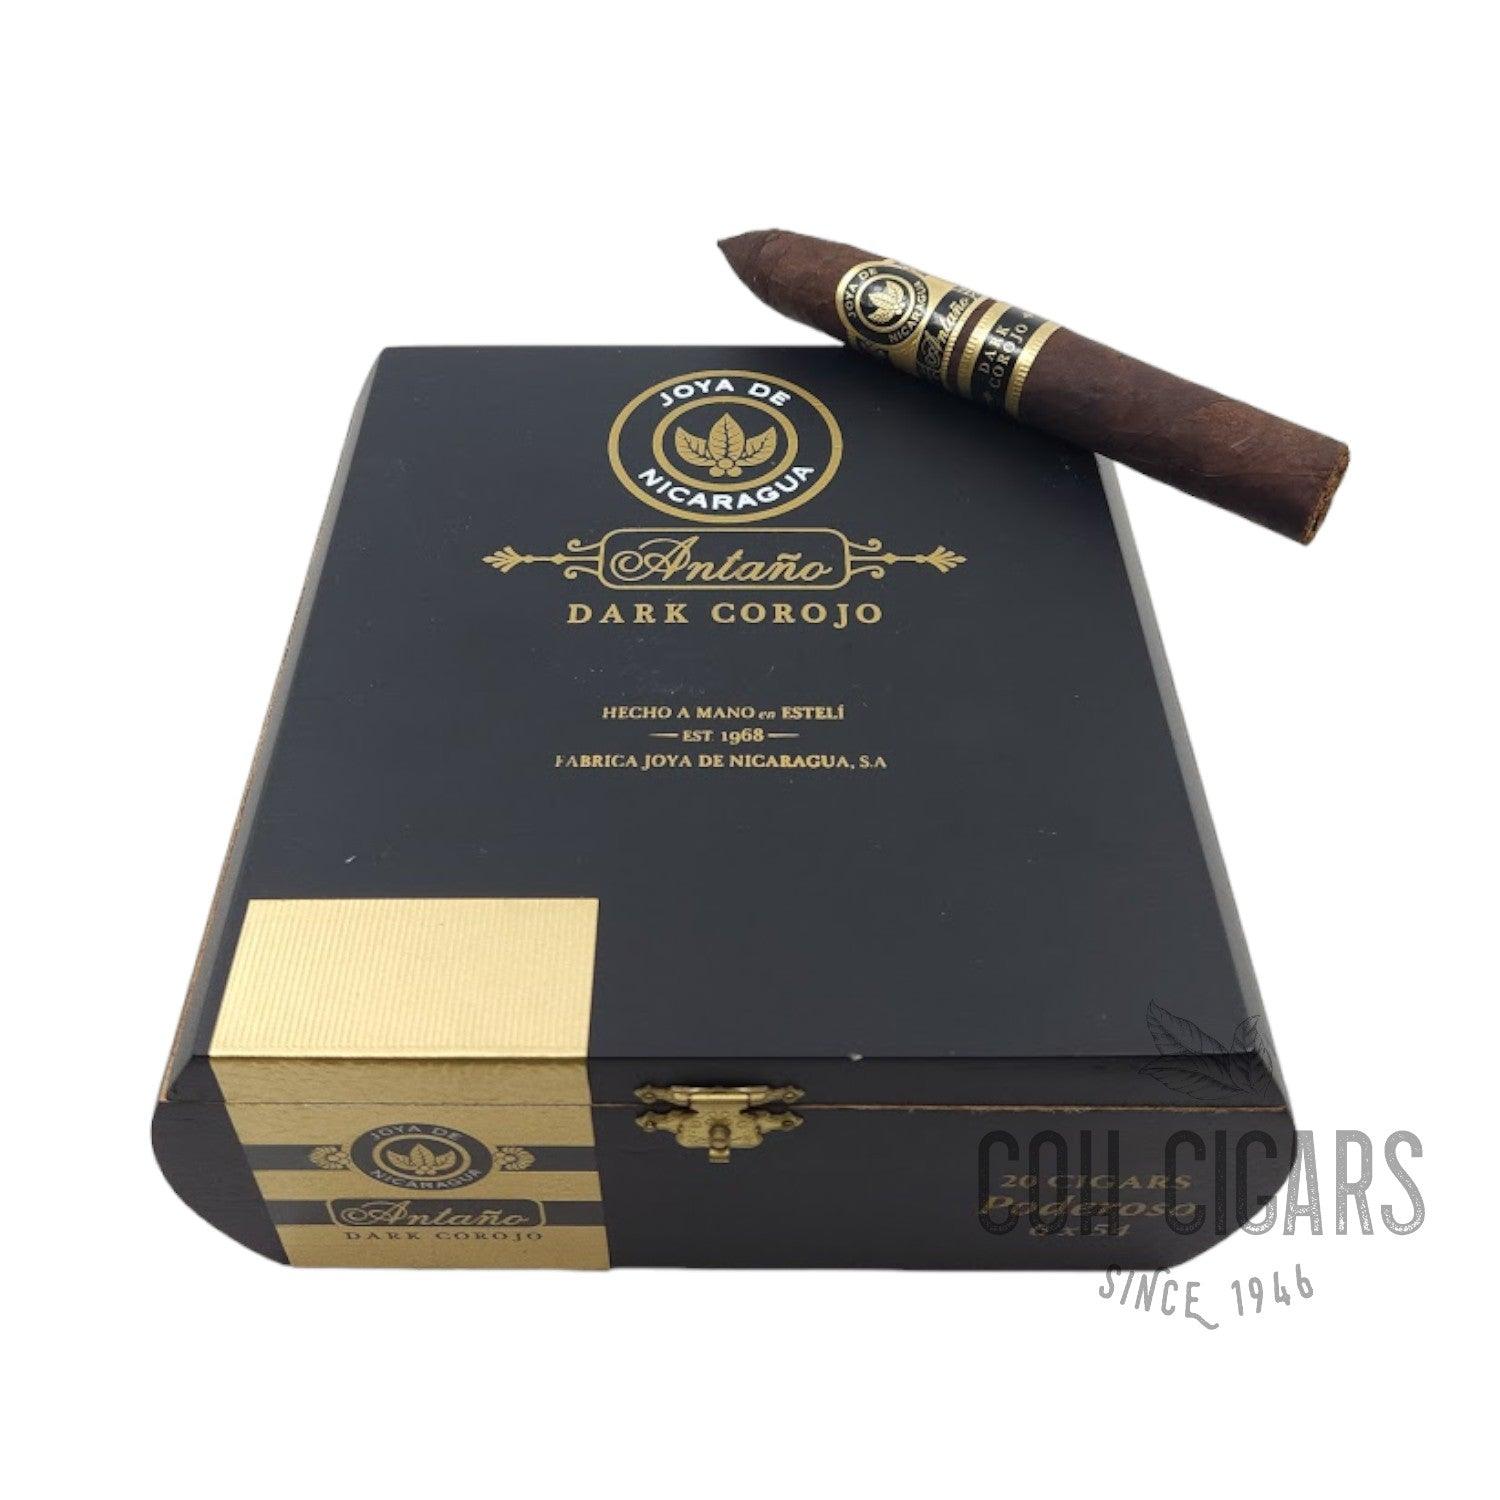 Joya De Nicaragua Cigar | Antano Dark Corojo Poderoso | Box 20 - hk.cohcigars